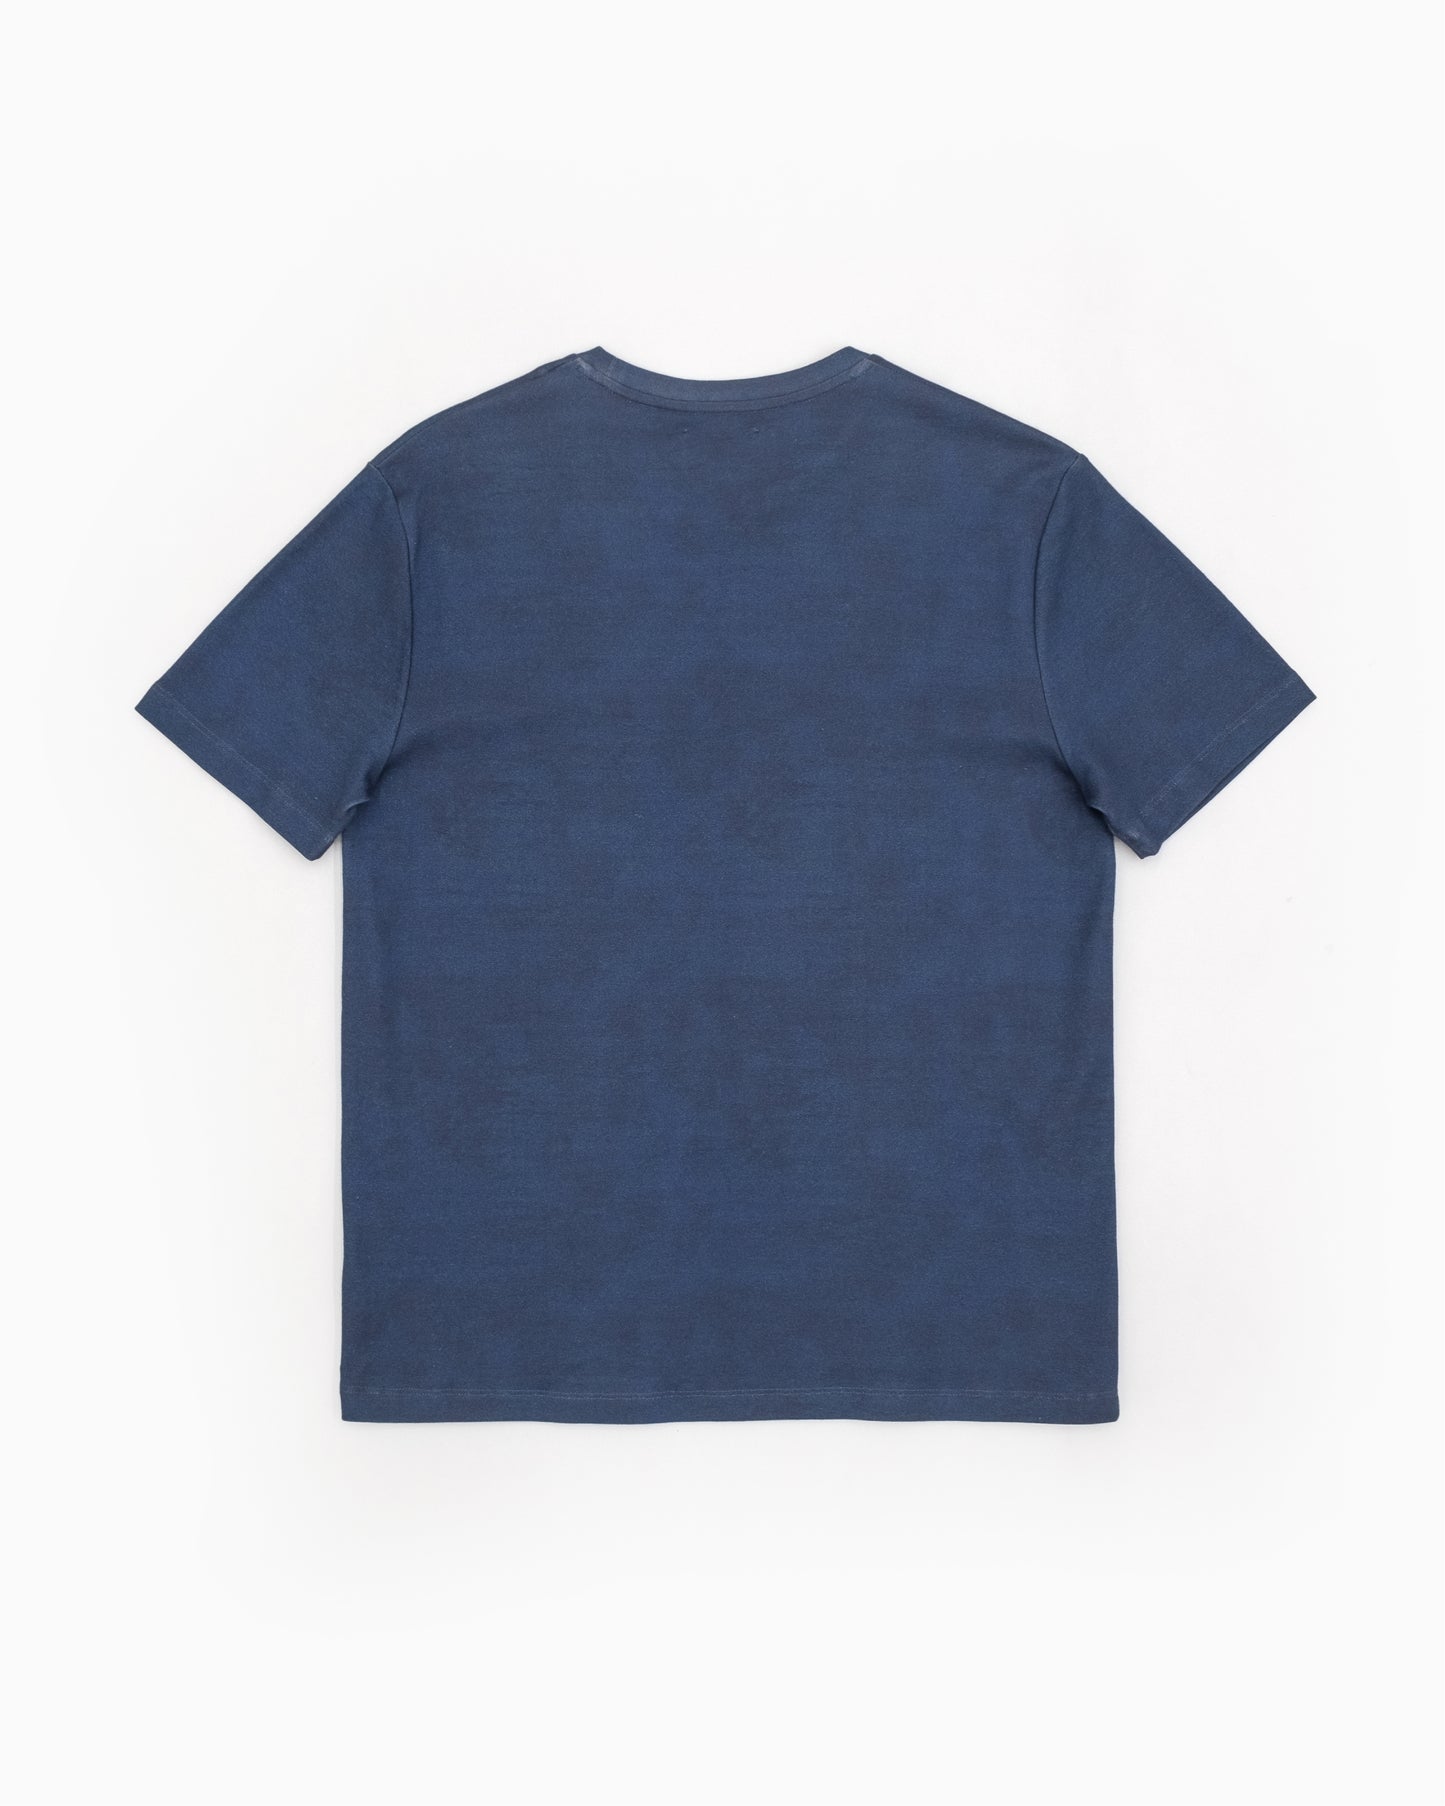 Raf Simons x Brian Calvin T-Shirt - SS13 – Final Layer